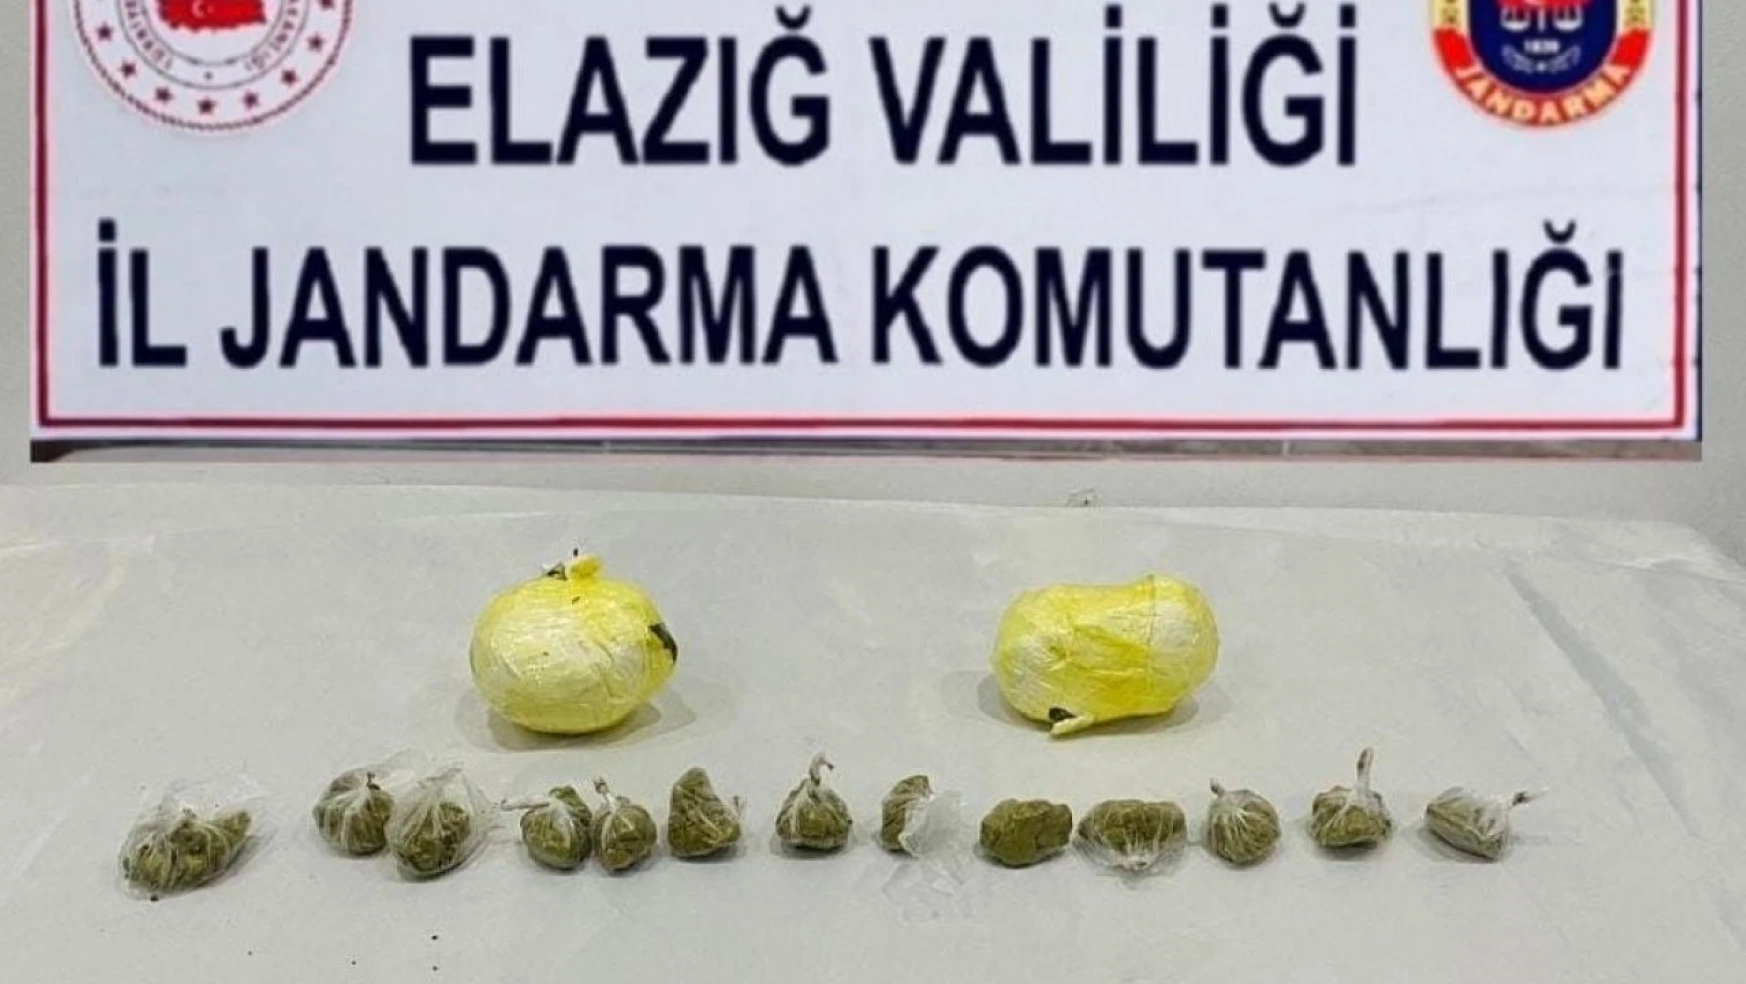 Elazığ'da uyuşturucu operasyonu: 2 kişi tutuklandı